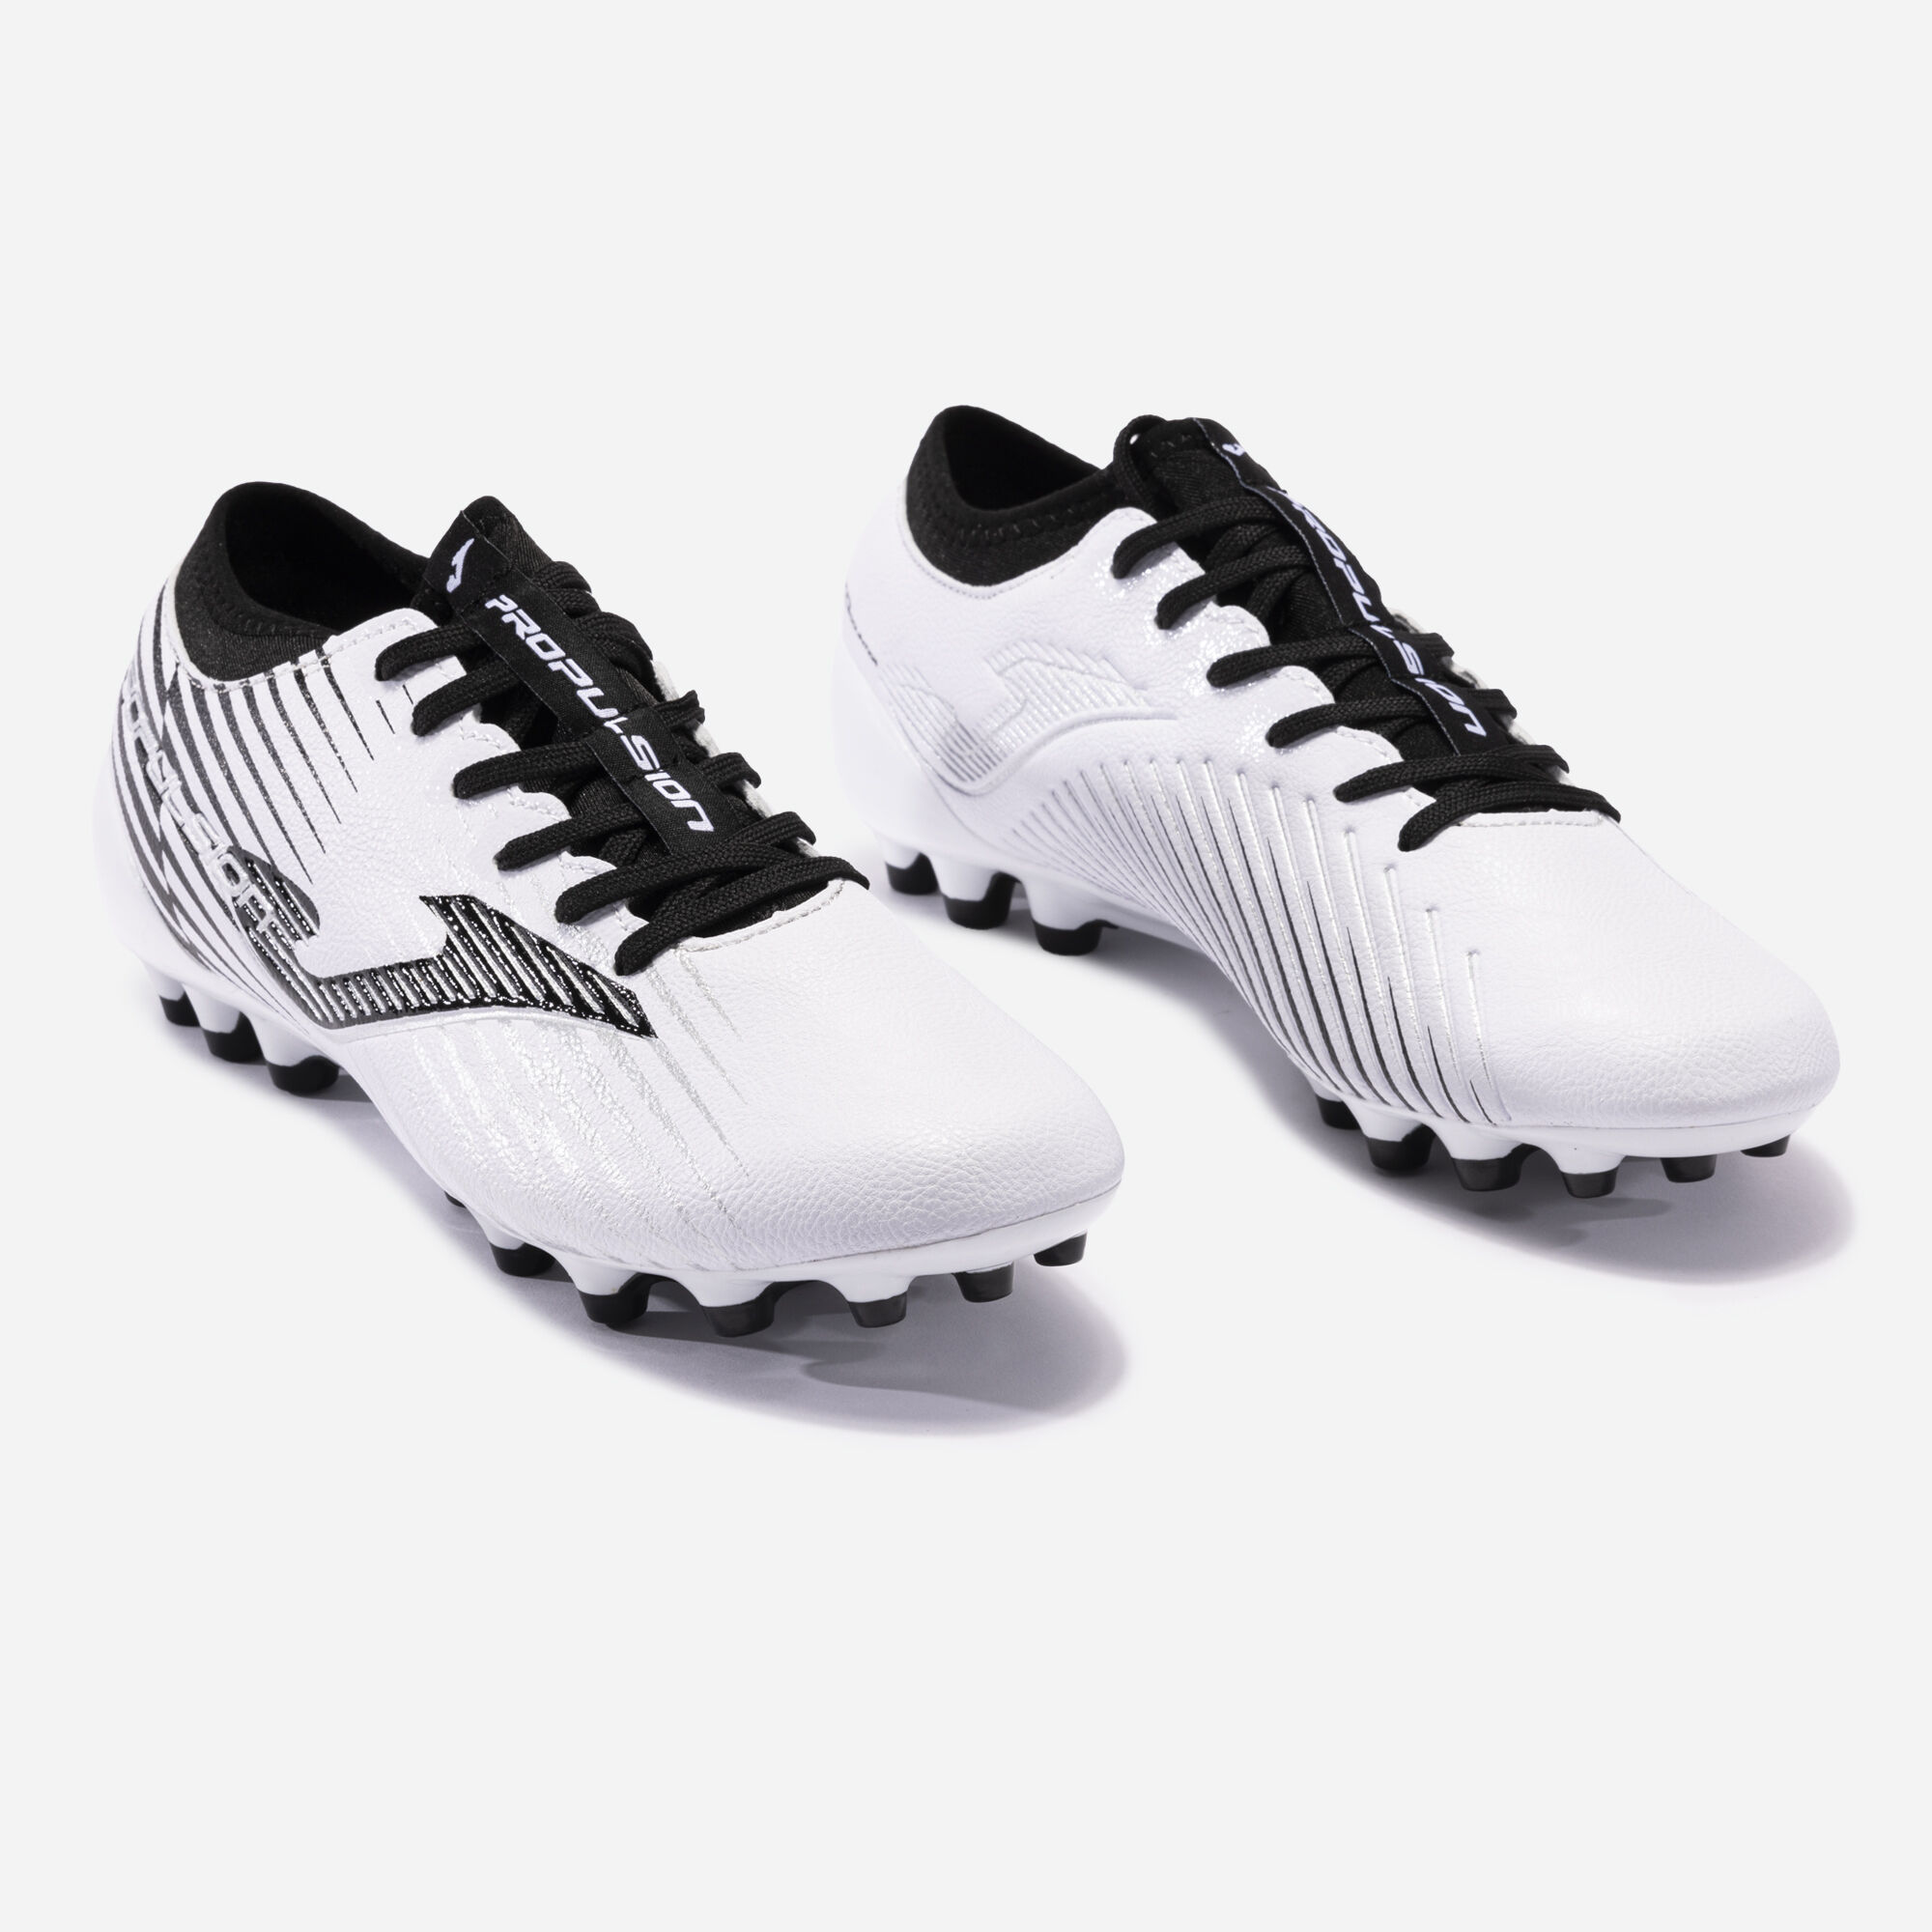 Buty piłkarskie Propulsion Cup 23 sztuczna trawa AG bialy czarny